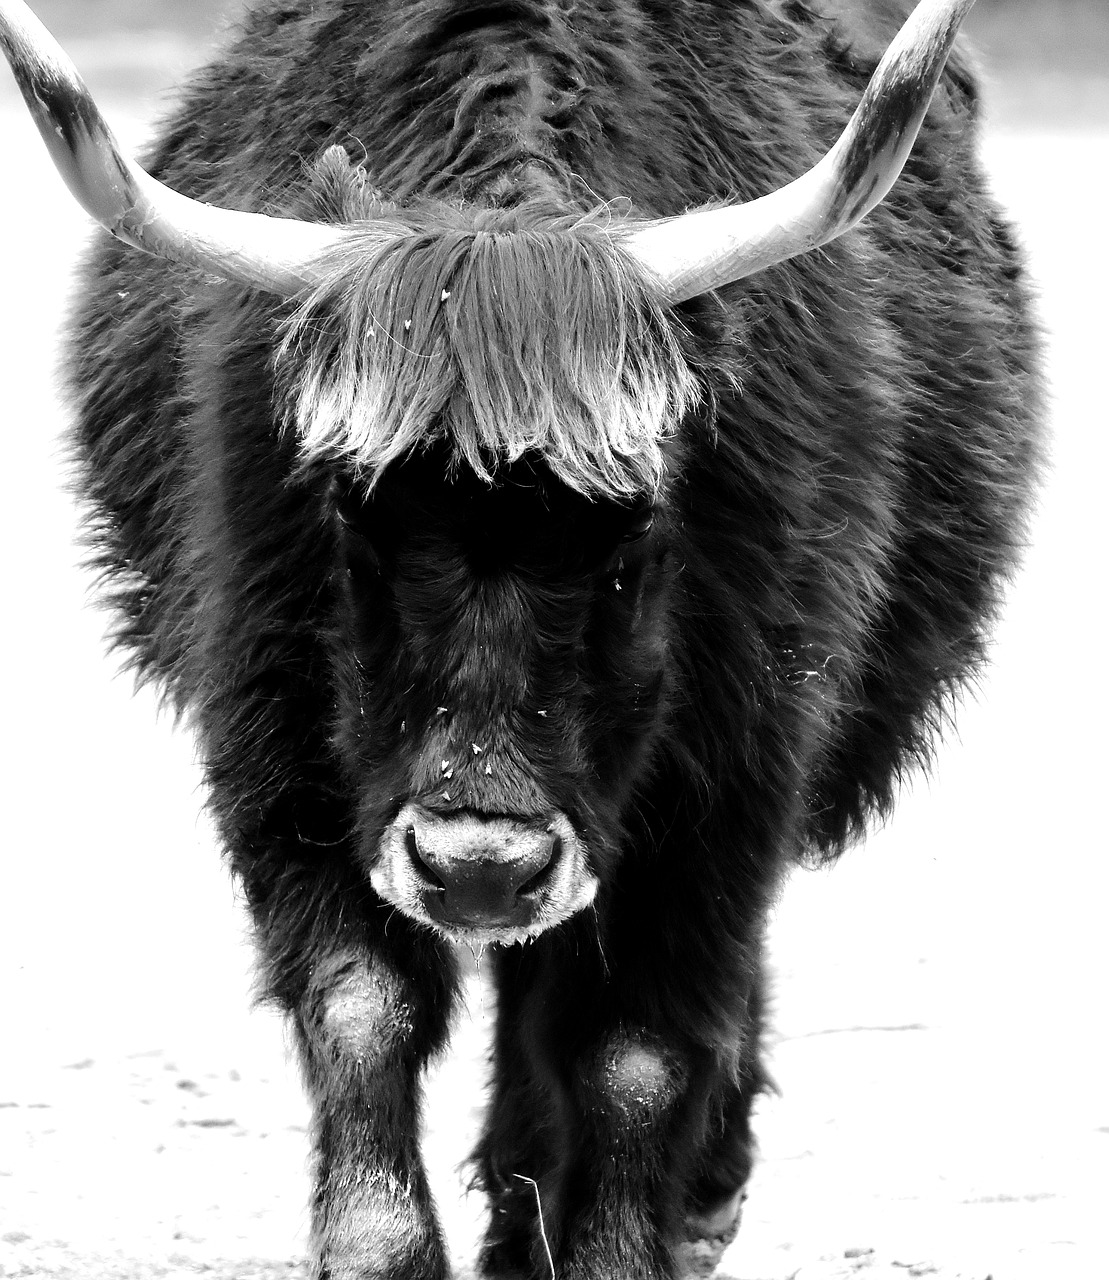 Image - aurochs beef cattle horns